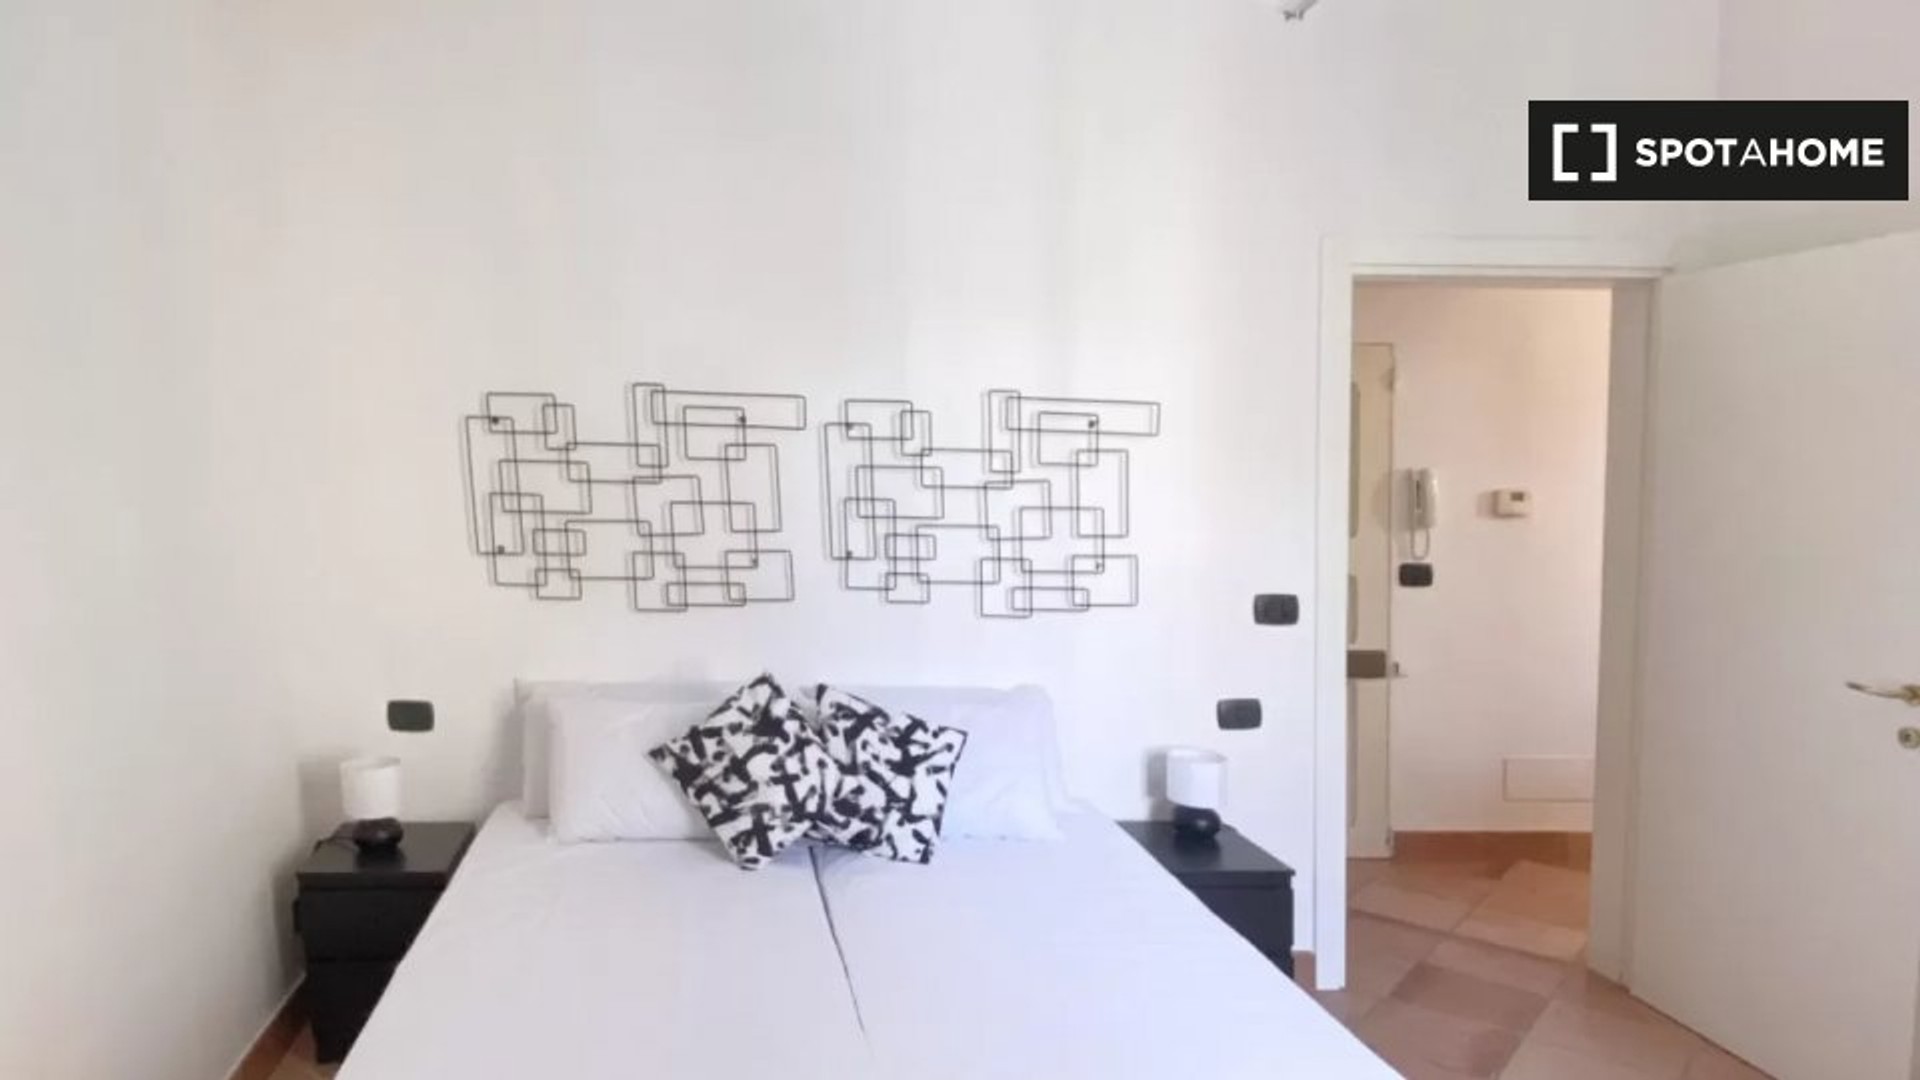 Apartamento moderno y luminoso en Bolonia